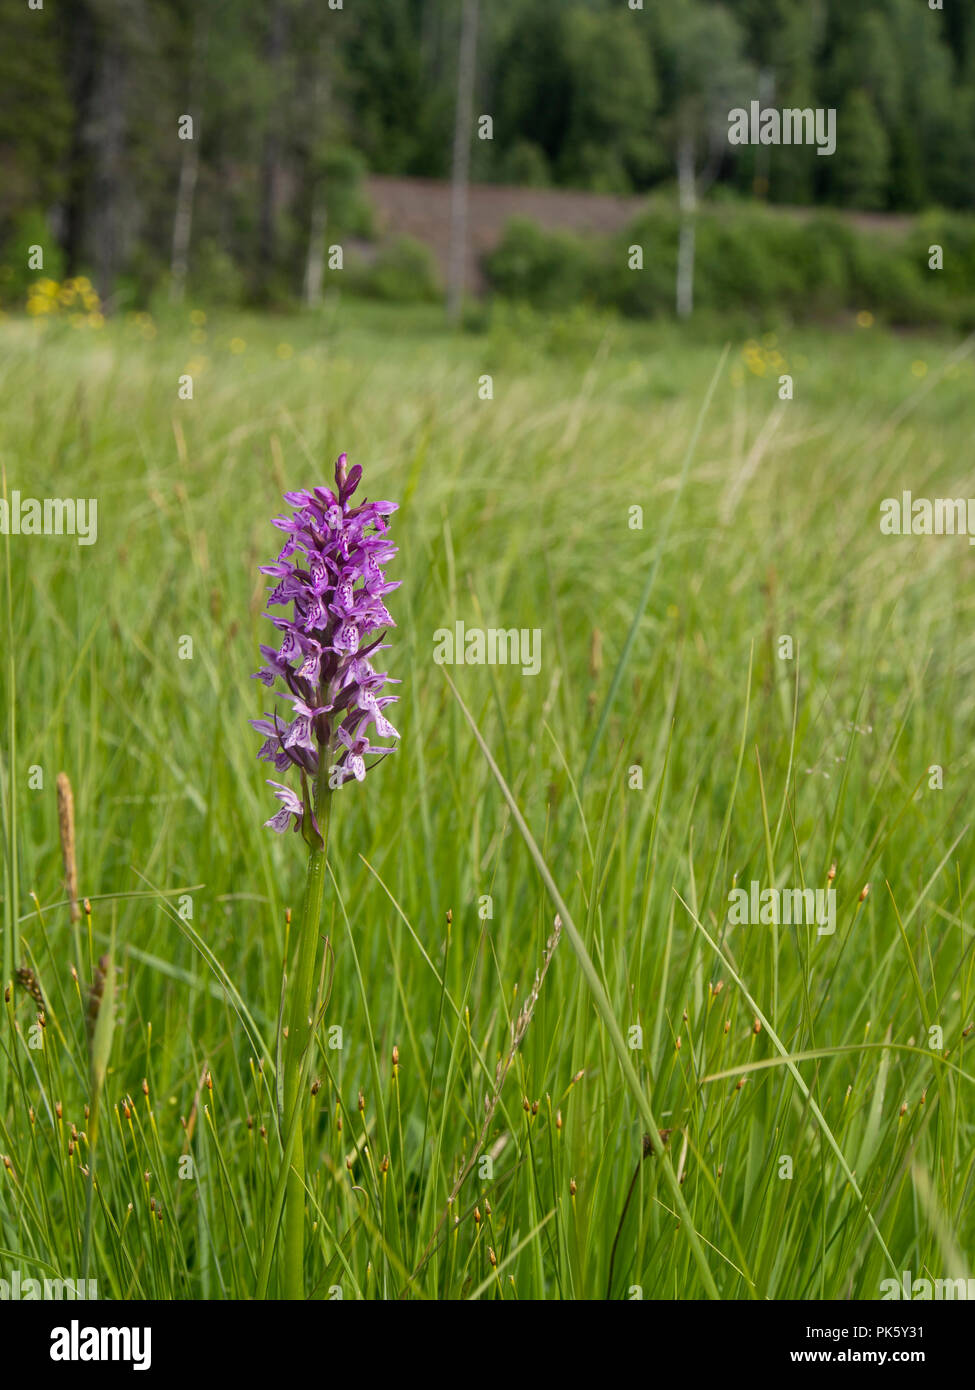 Slåttmyra Naturreservat, einem Naturschutzgebiet Konservieren von alten Gras Ernte Techniken von den Mauren, die in vielen Orchideenarten, Oslo, Norwegen Stockfoto